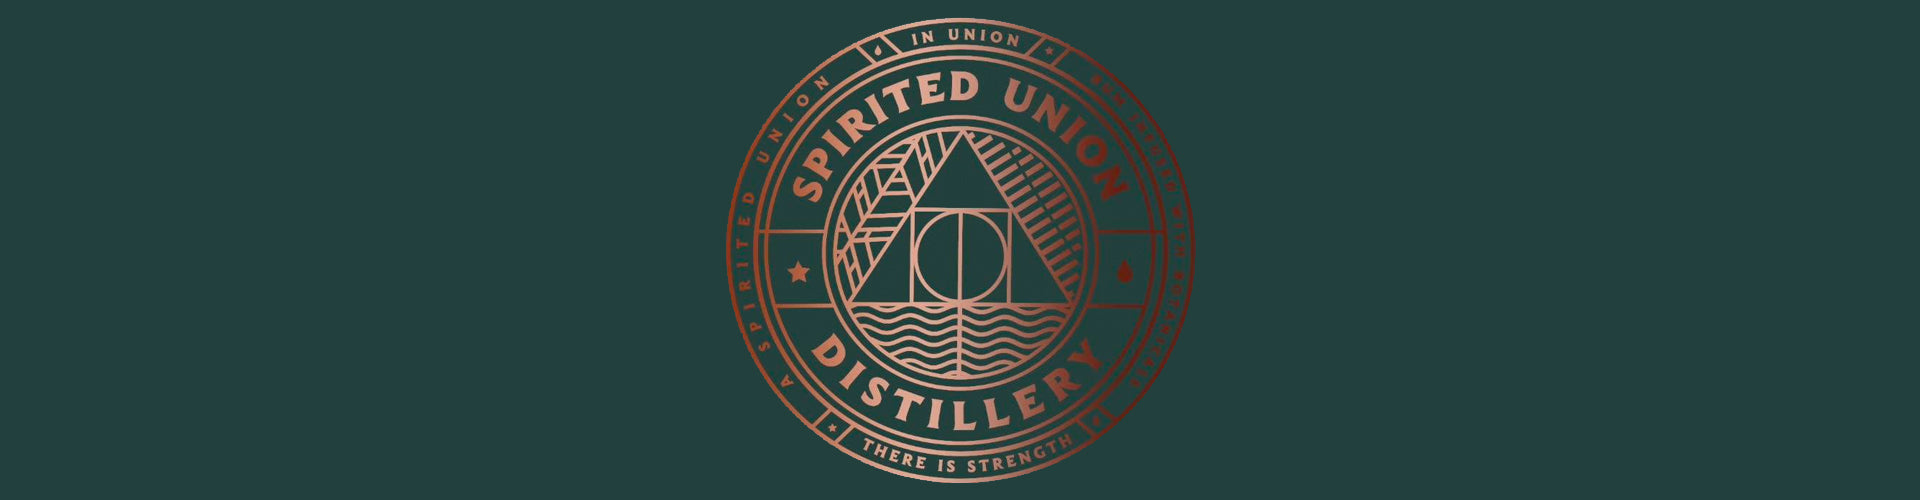 Spirited Union Distillery Collection Banner